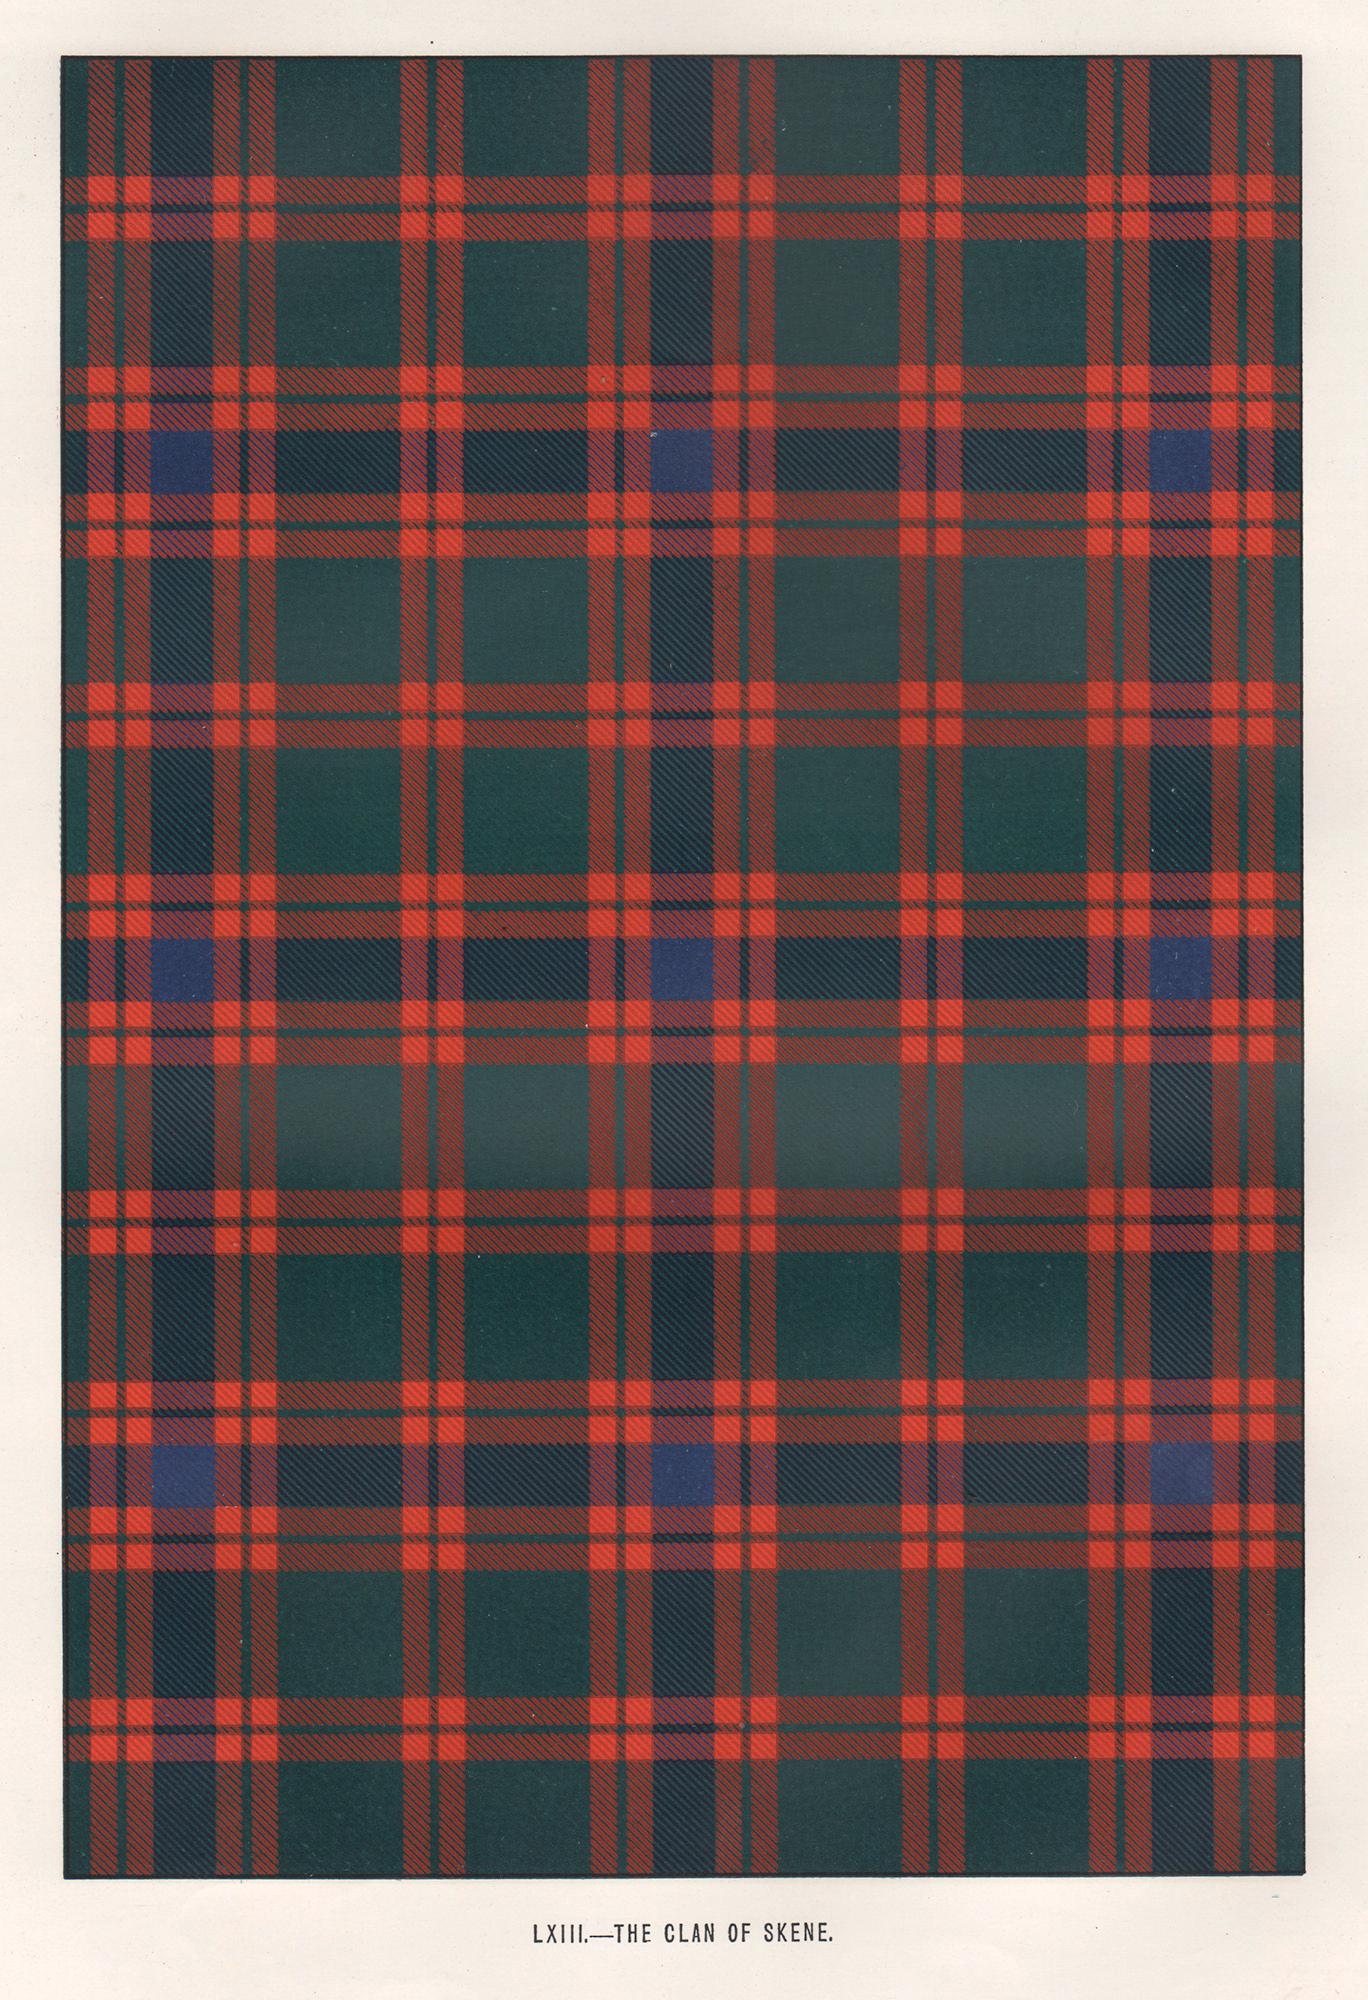 Lithographie du clan de Skene (tartan), Écosse écossaise de conception artistique